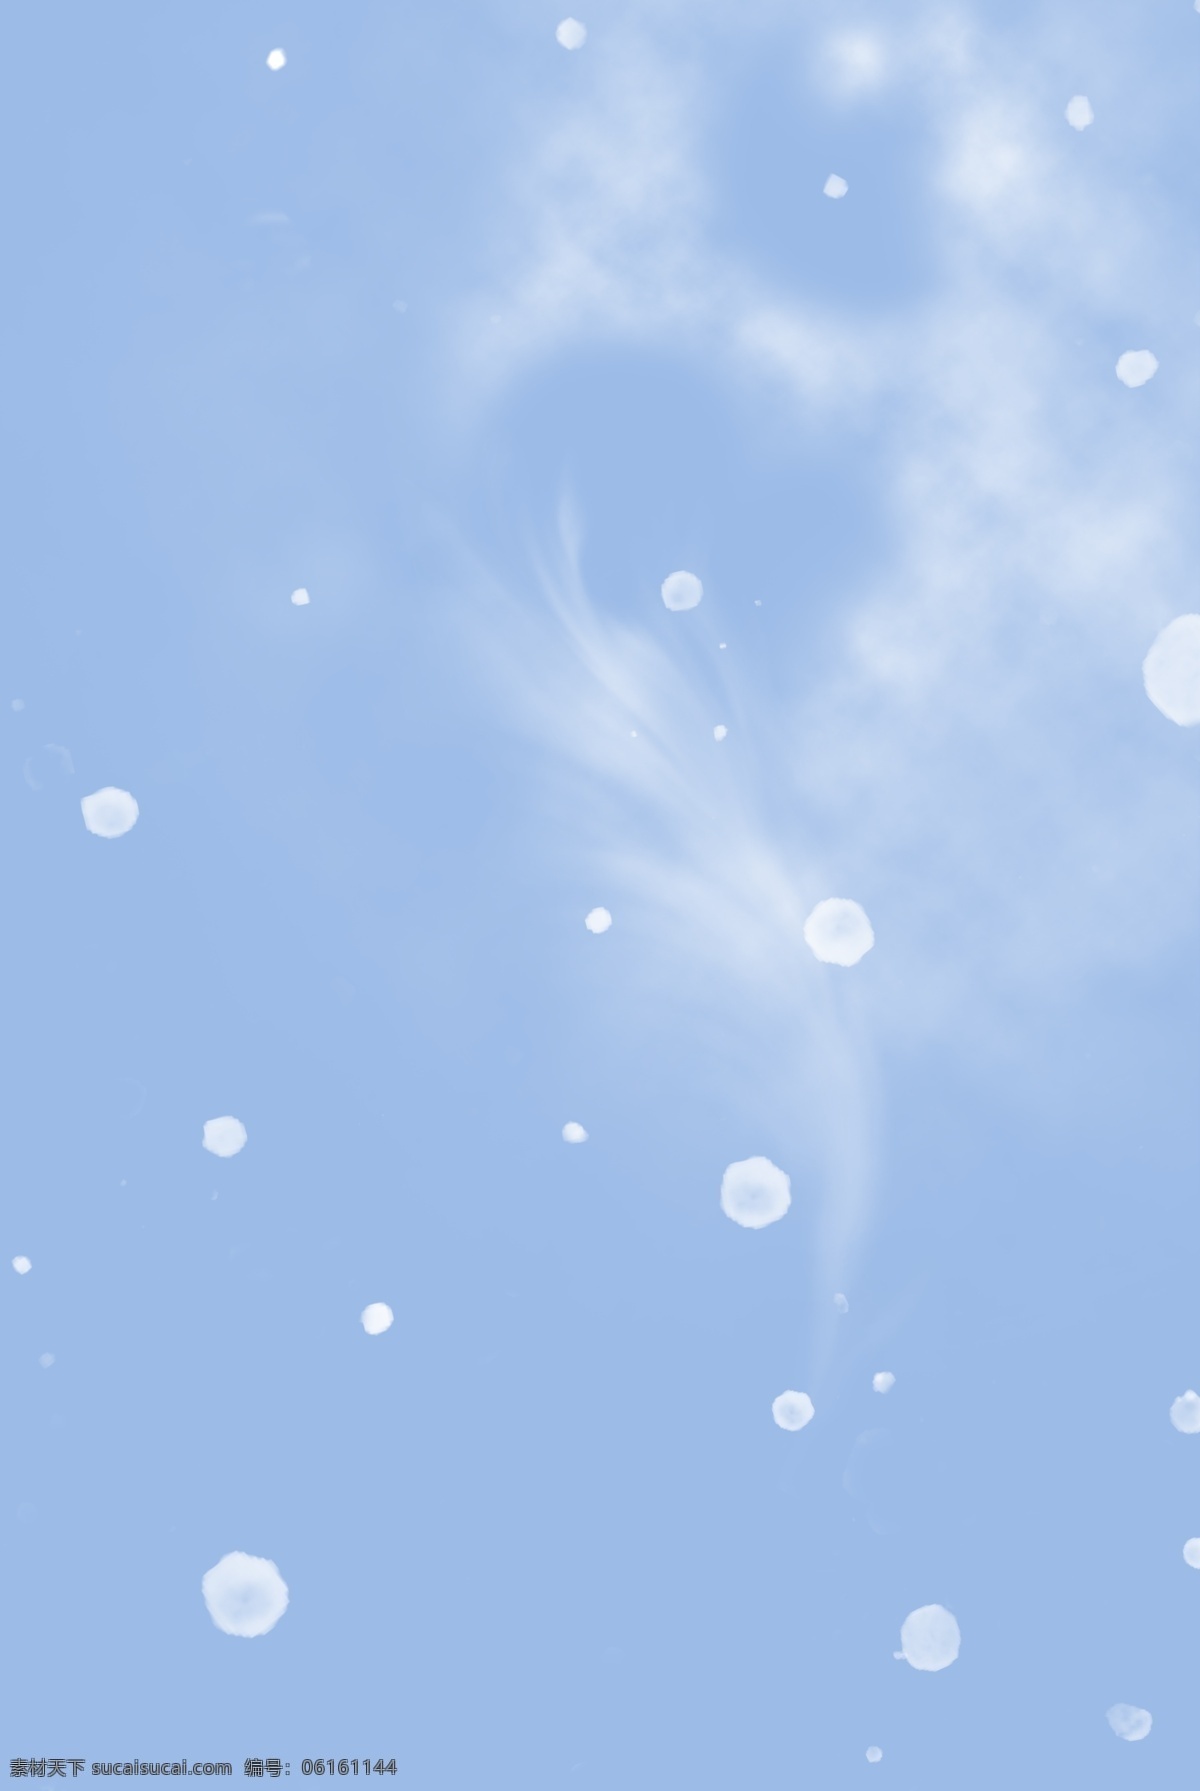 简约 蓝色 雪花 卡通 背景 烟雾 清新 雪天 冬季